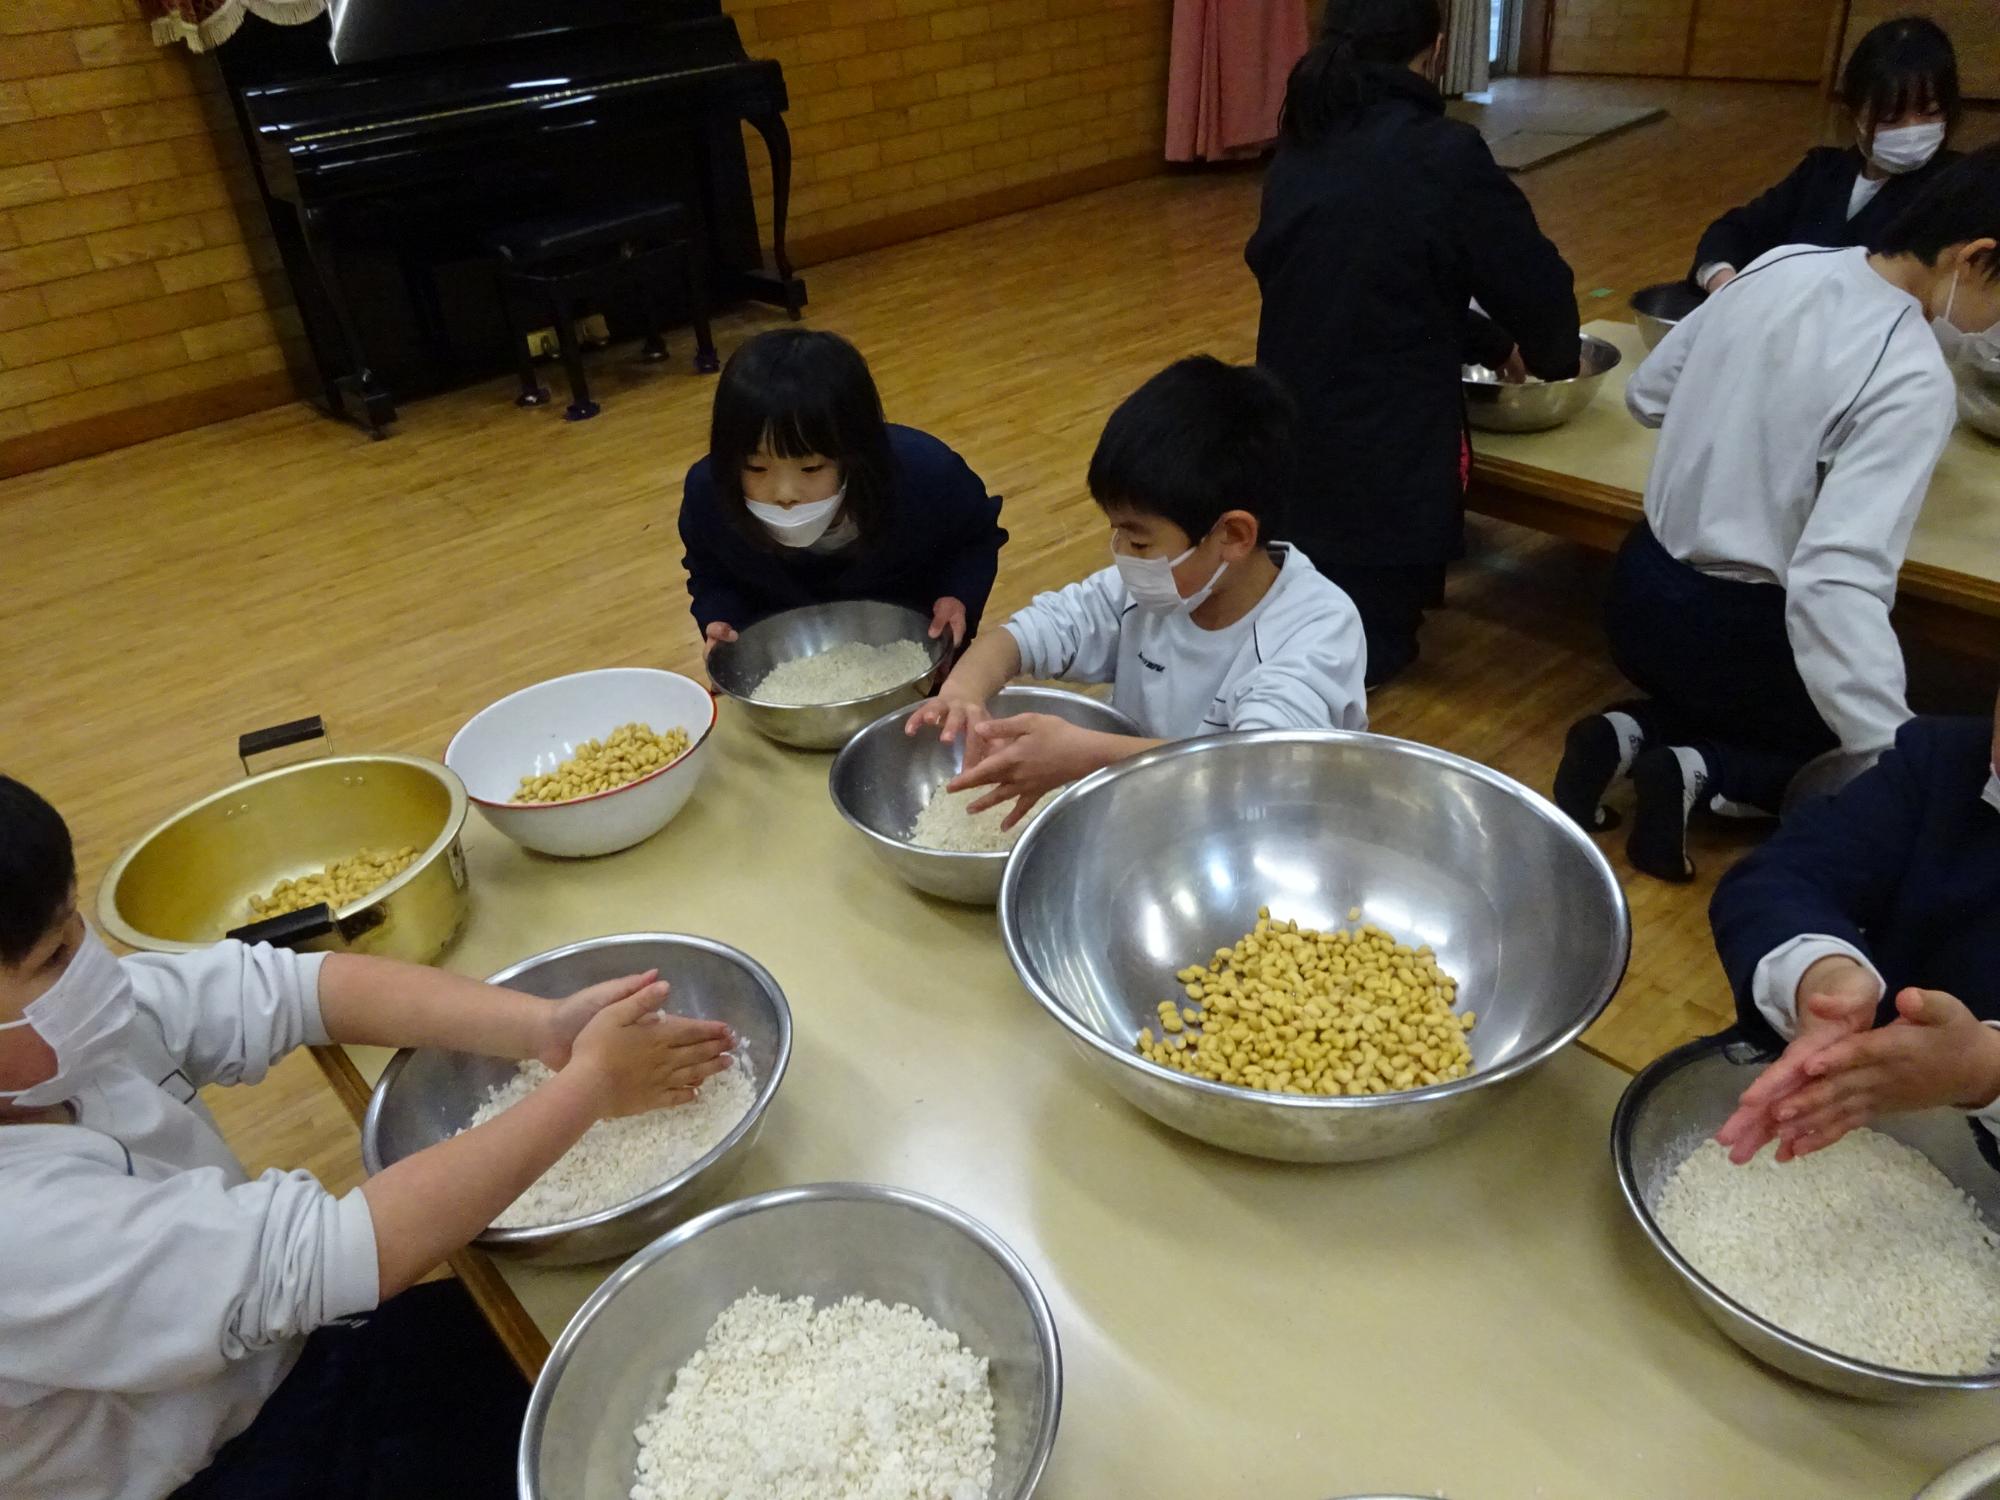 児童らがテーブルの上に大豆や麹が入ったボールを並べている写真